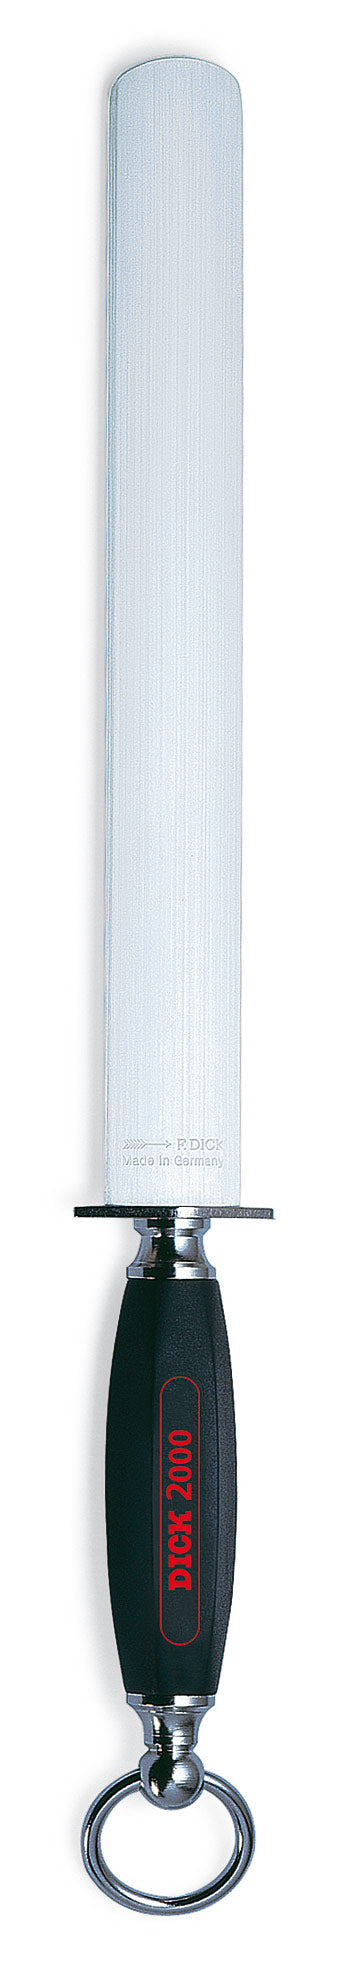 F.DICK 2000 FLAT STEEL(7200028)